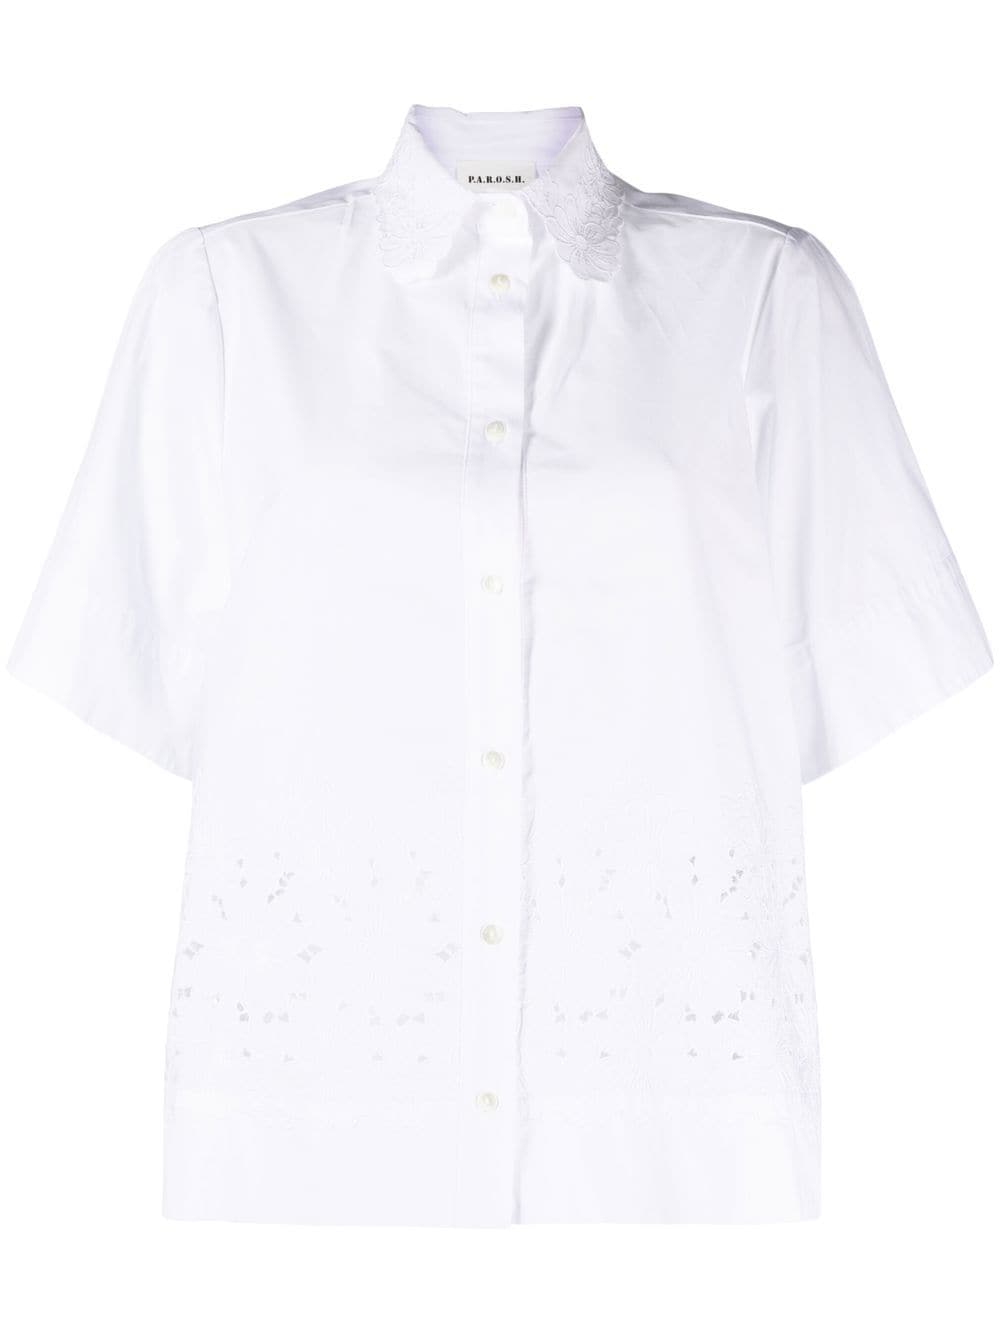 P.A.R.O.S.H. broderie-anglaise short-sleeve shirt - White von P.A.R.O.S.H.